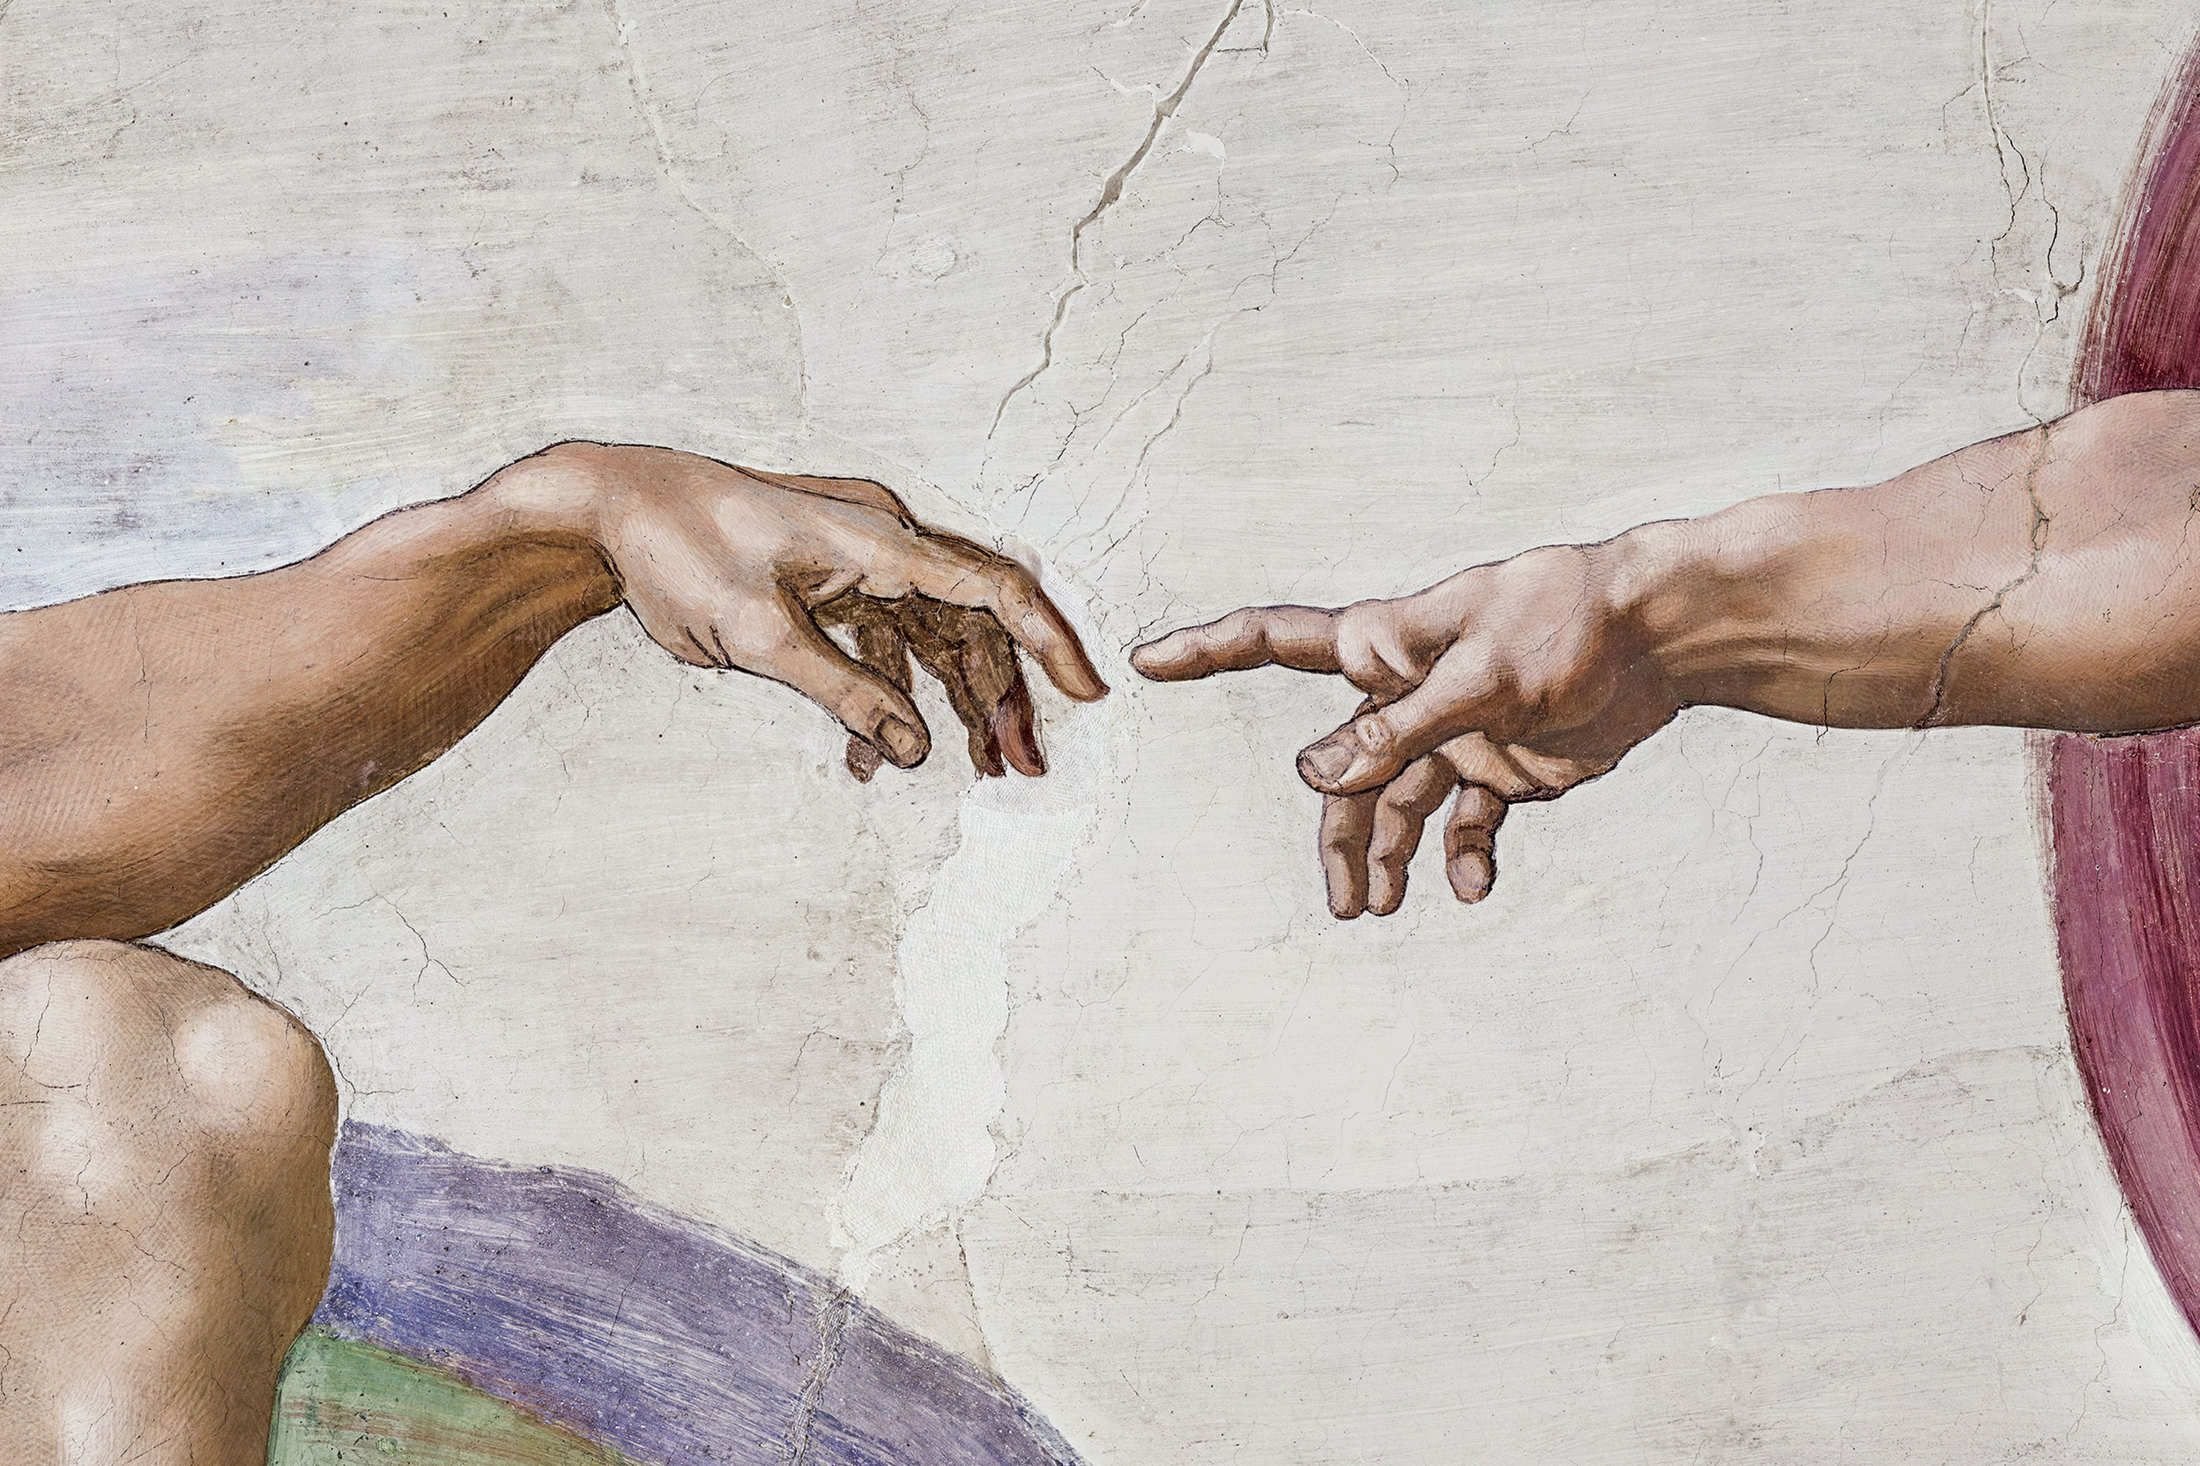 Руки человека рассказ. Сикстинская капелла прикосновение Адама. Фреска Микеланджело Сотворение Адама. "Сотворение Адама" Микеланджело, 1511. Микеланджело Буонарроти картины Сотворение Адама.